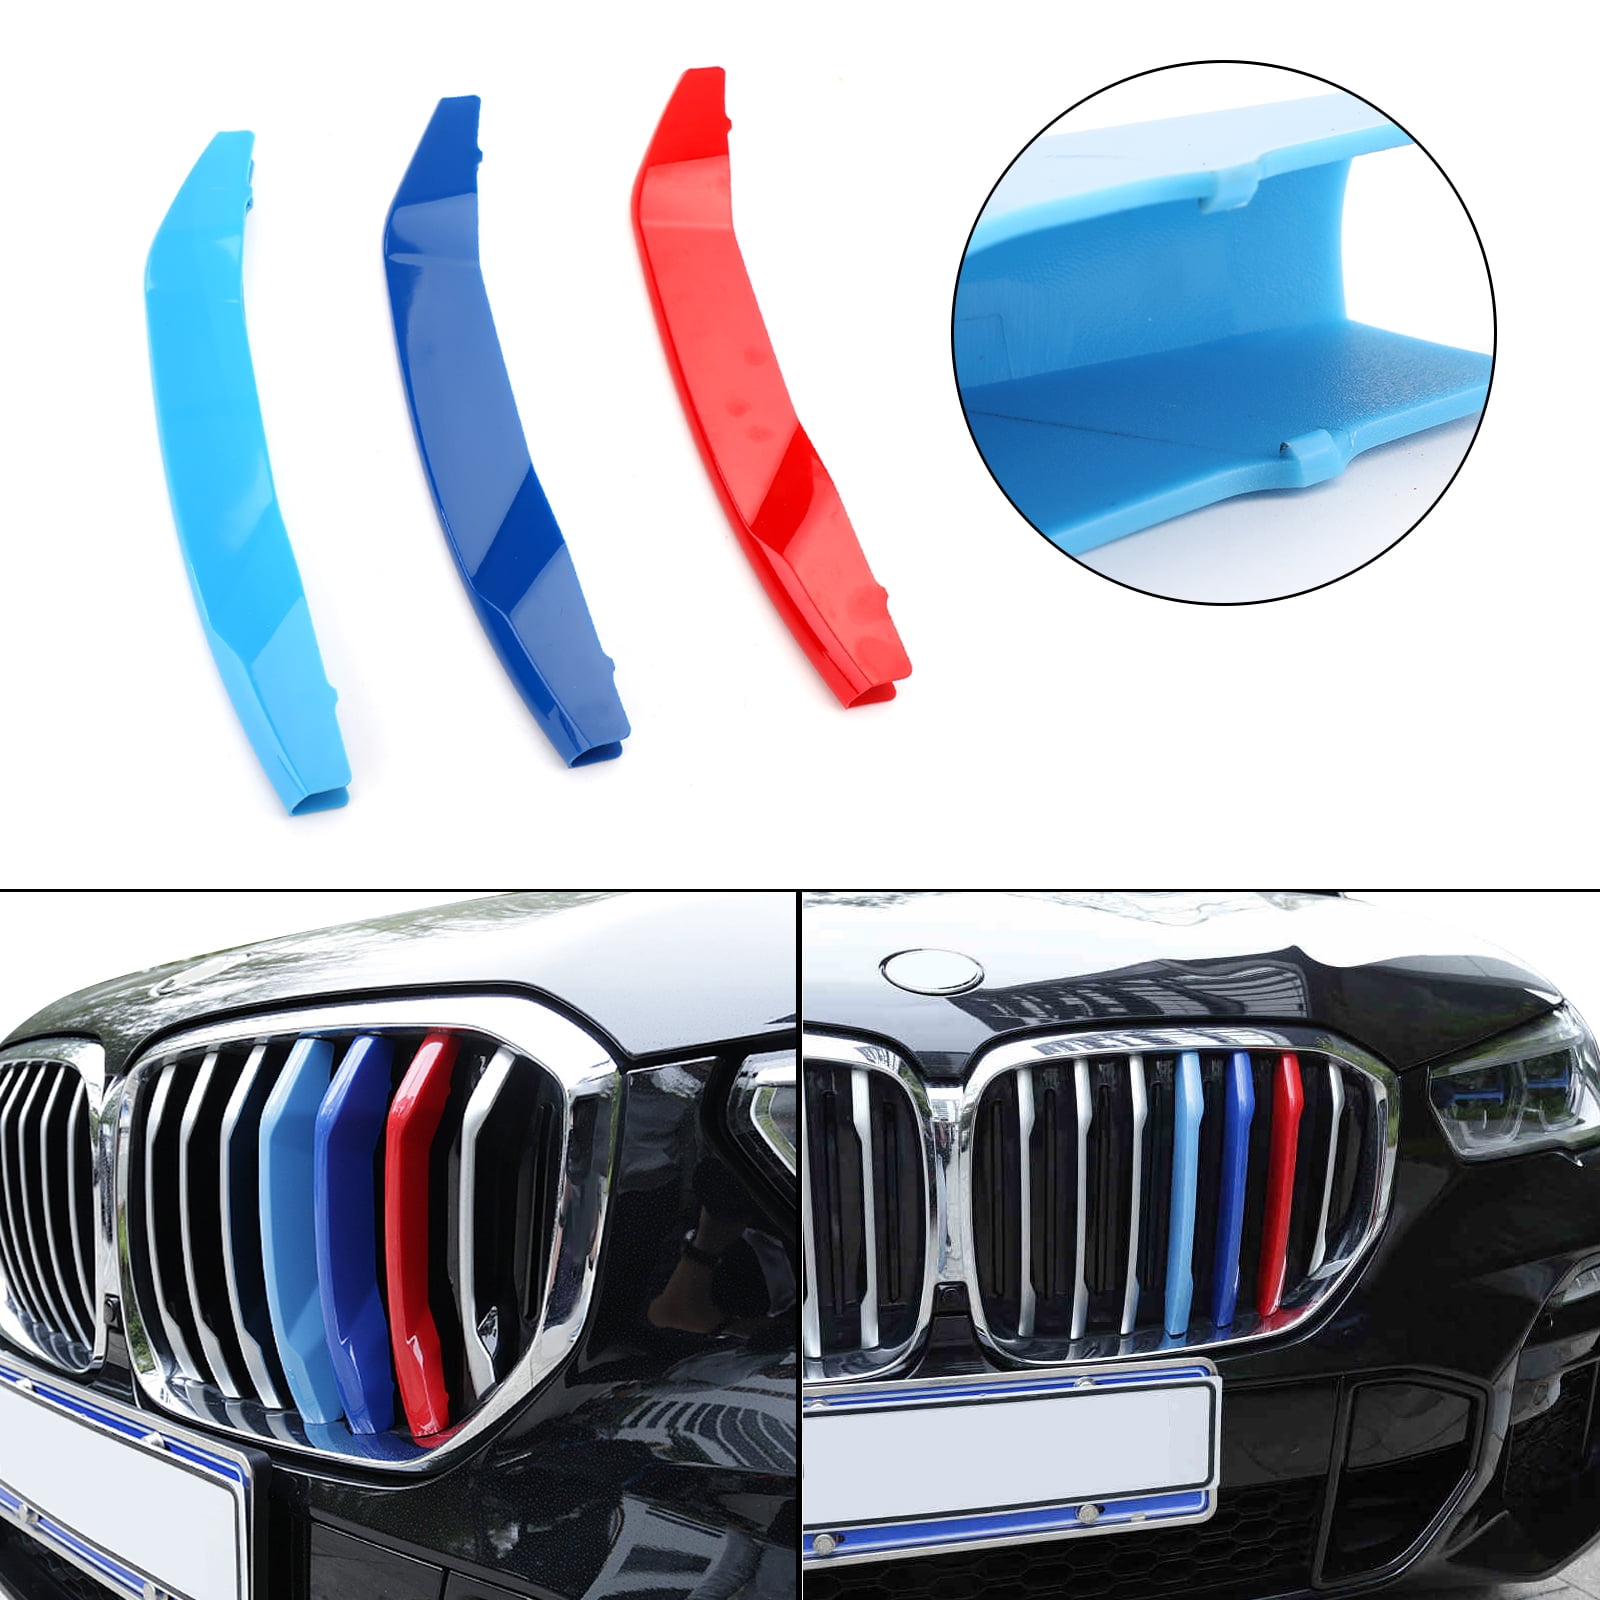 Details about   BMW X6 E71 2012-14 Kidney Grille Motorsports 3 tri-Colour Cover Cap Clip strip 